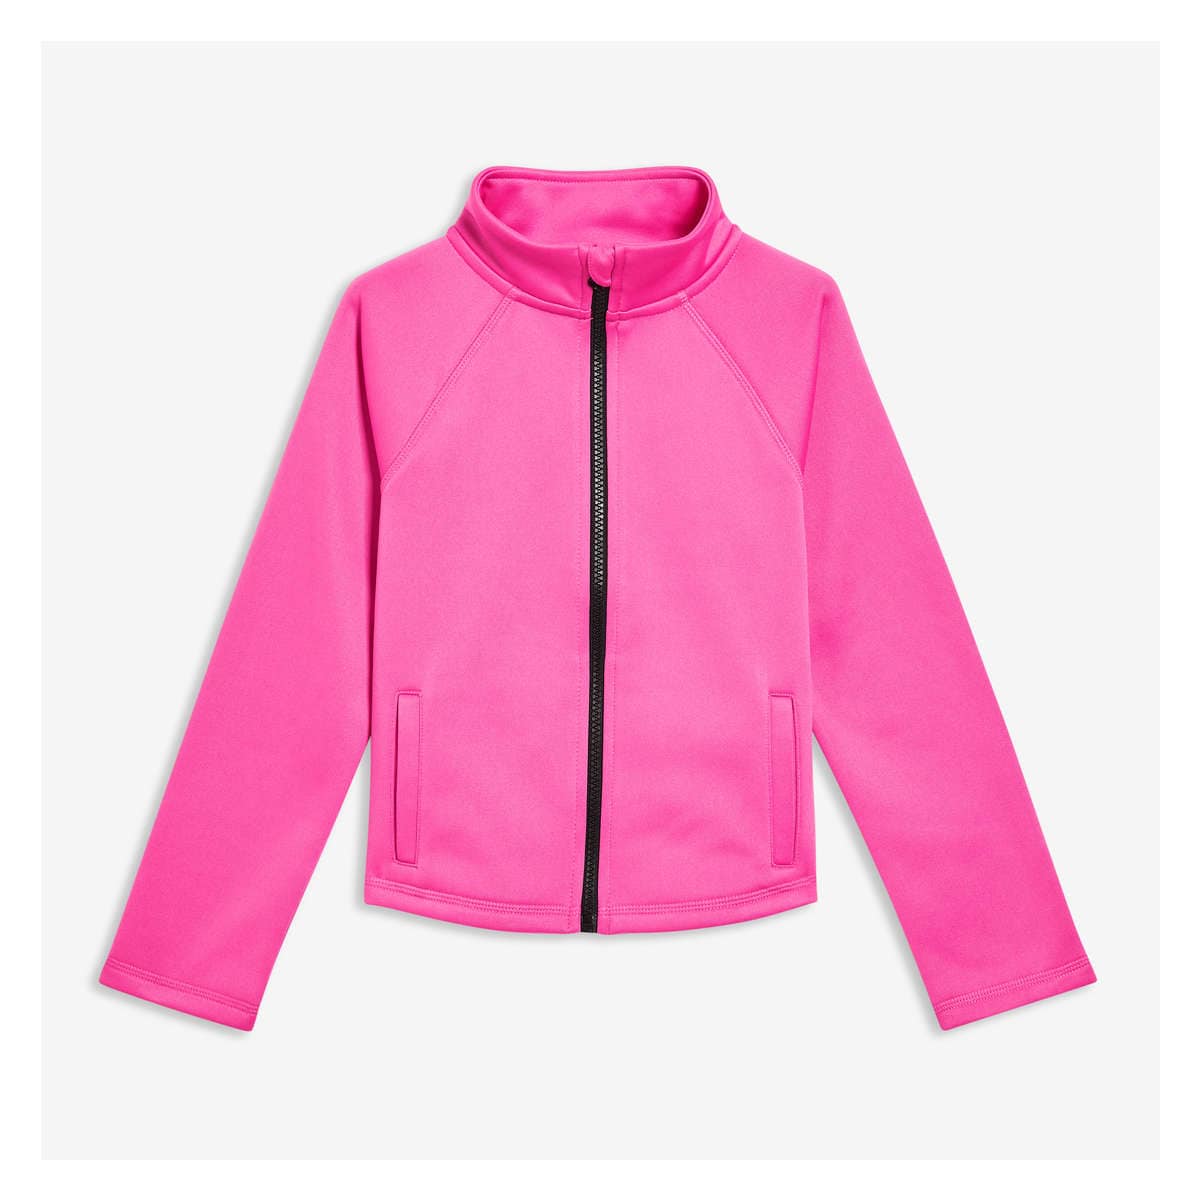 Kid Girls' Zip-Up Active Jacket in Pink from Joe Fresh